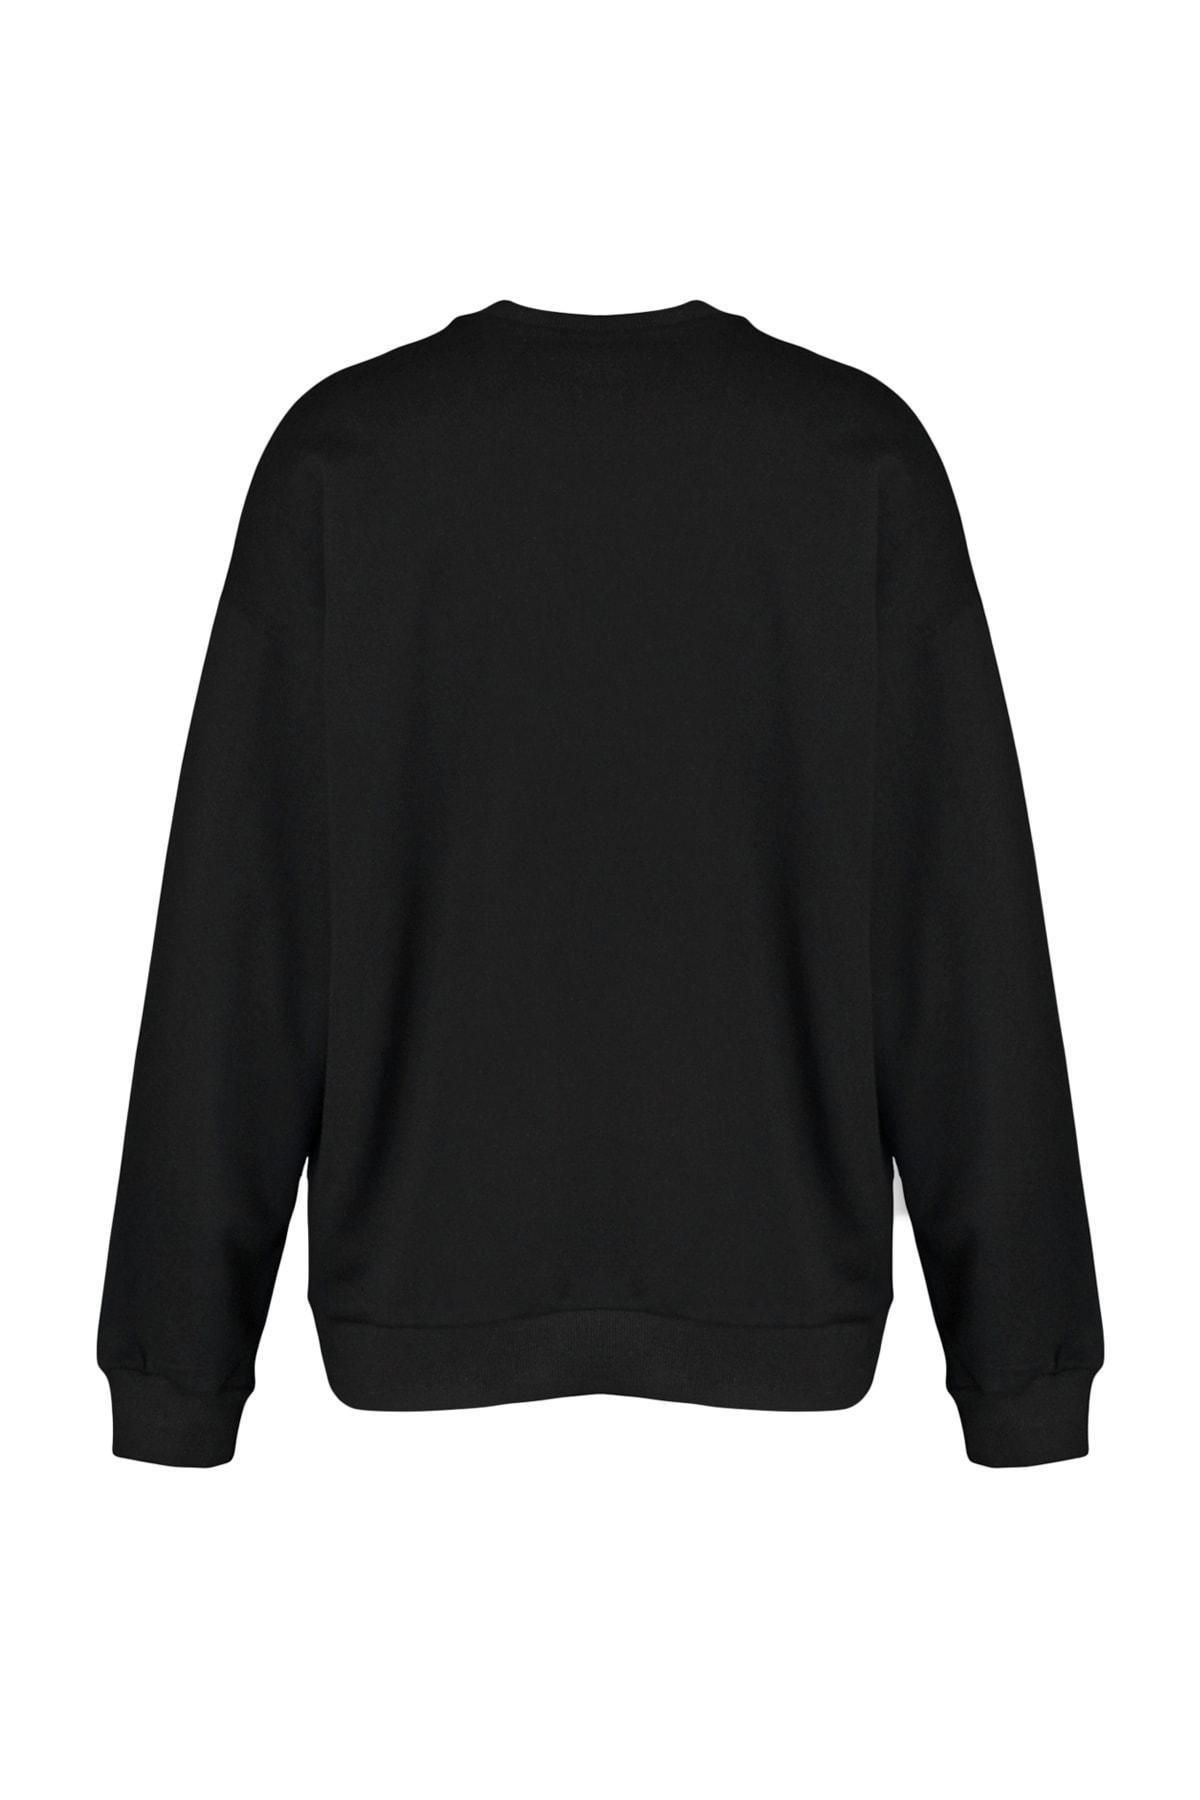 Trendyol - Black Oversize Crew Neck Sweatshirt